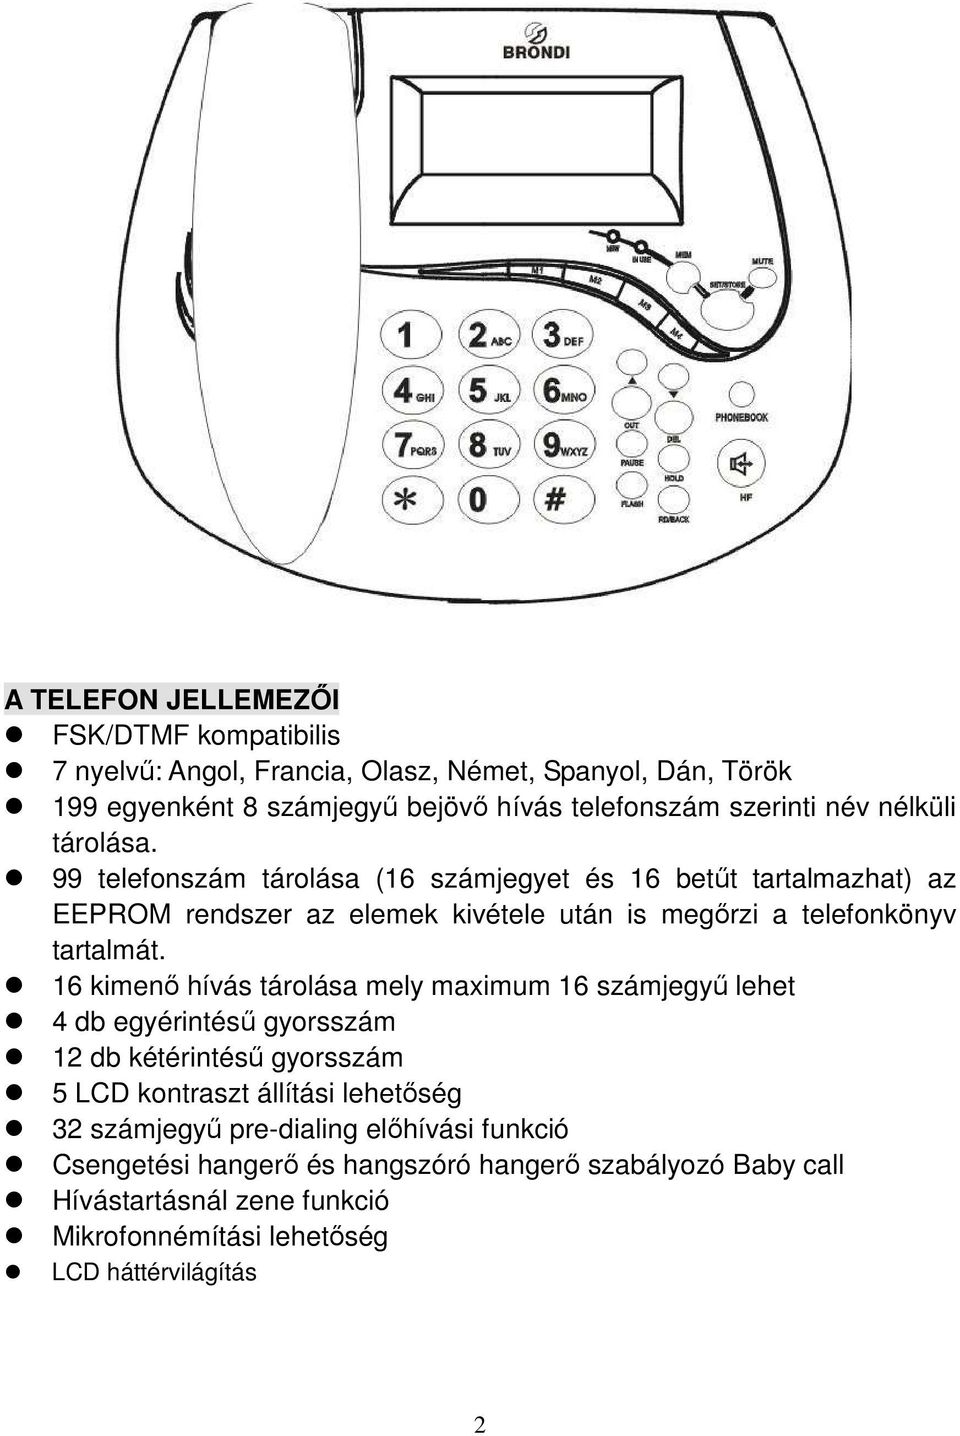 TM-01V Vezetékes telefon Használati utasítás - PDF Free Download